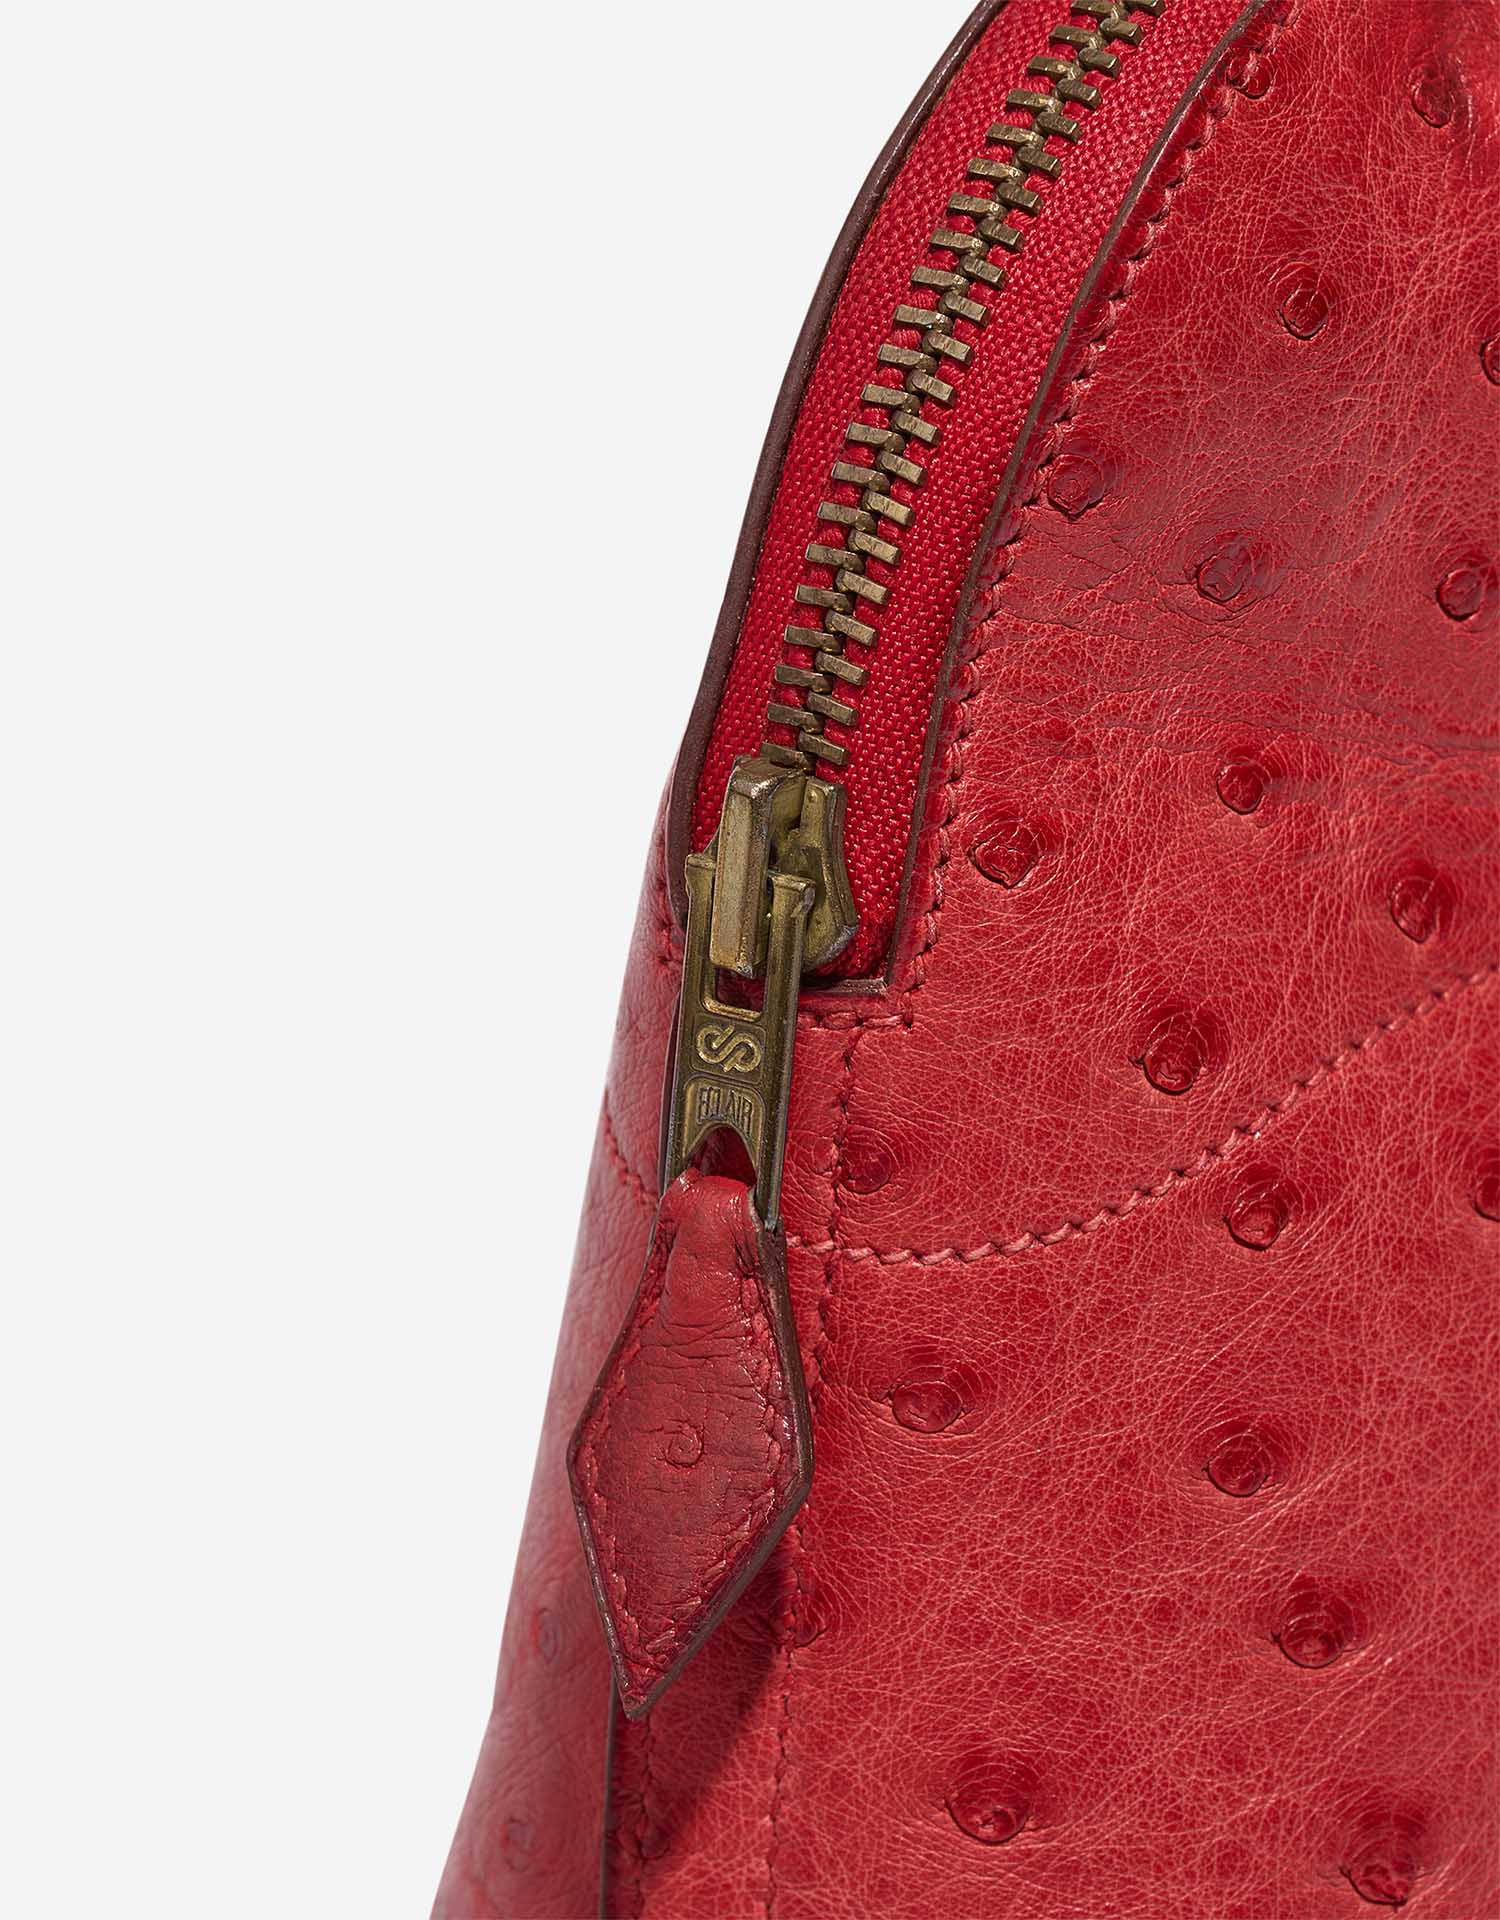 Hermès Bolide 27 RougeVif Verschluss-System | Verkaufen Sie Ihre Designer-Tasche auf Saclab.com